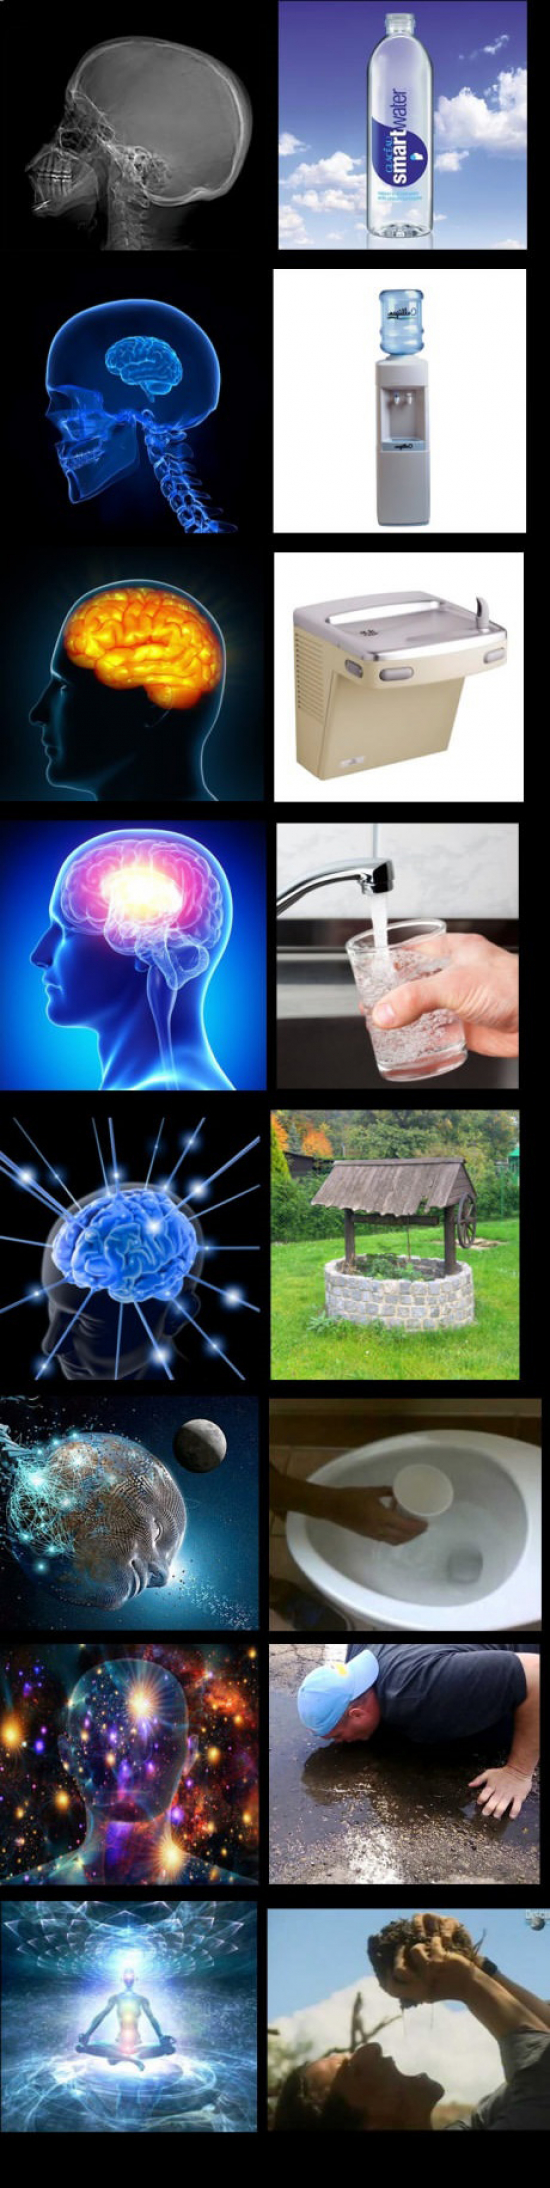 agua,evolución,formas,meme